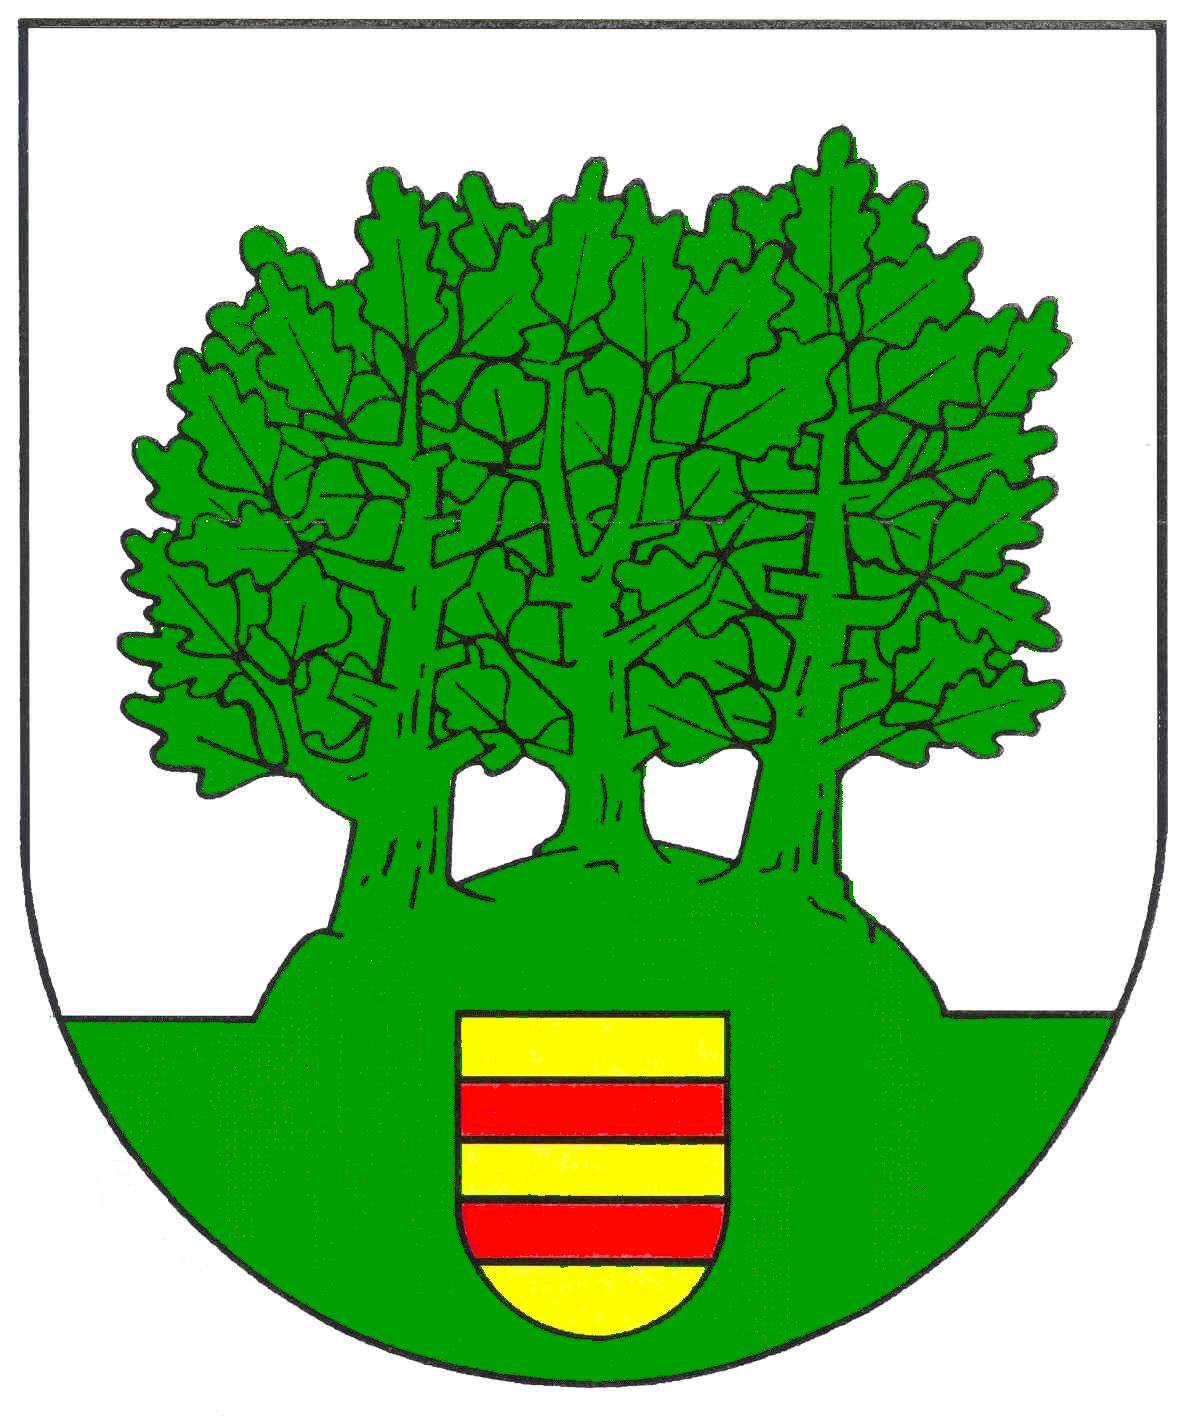 Wappen Gemeinde Damlos, Kreis Ostholstein